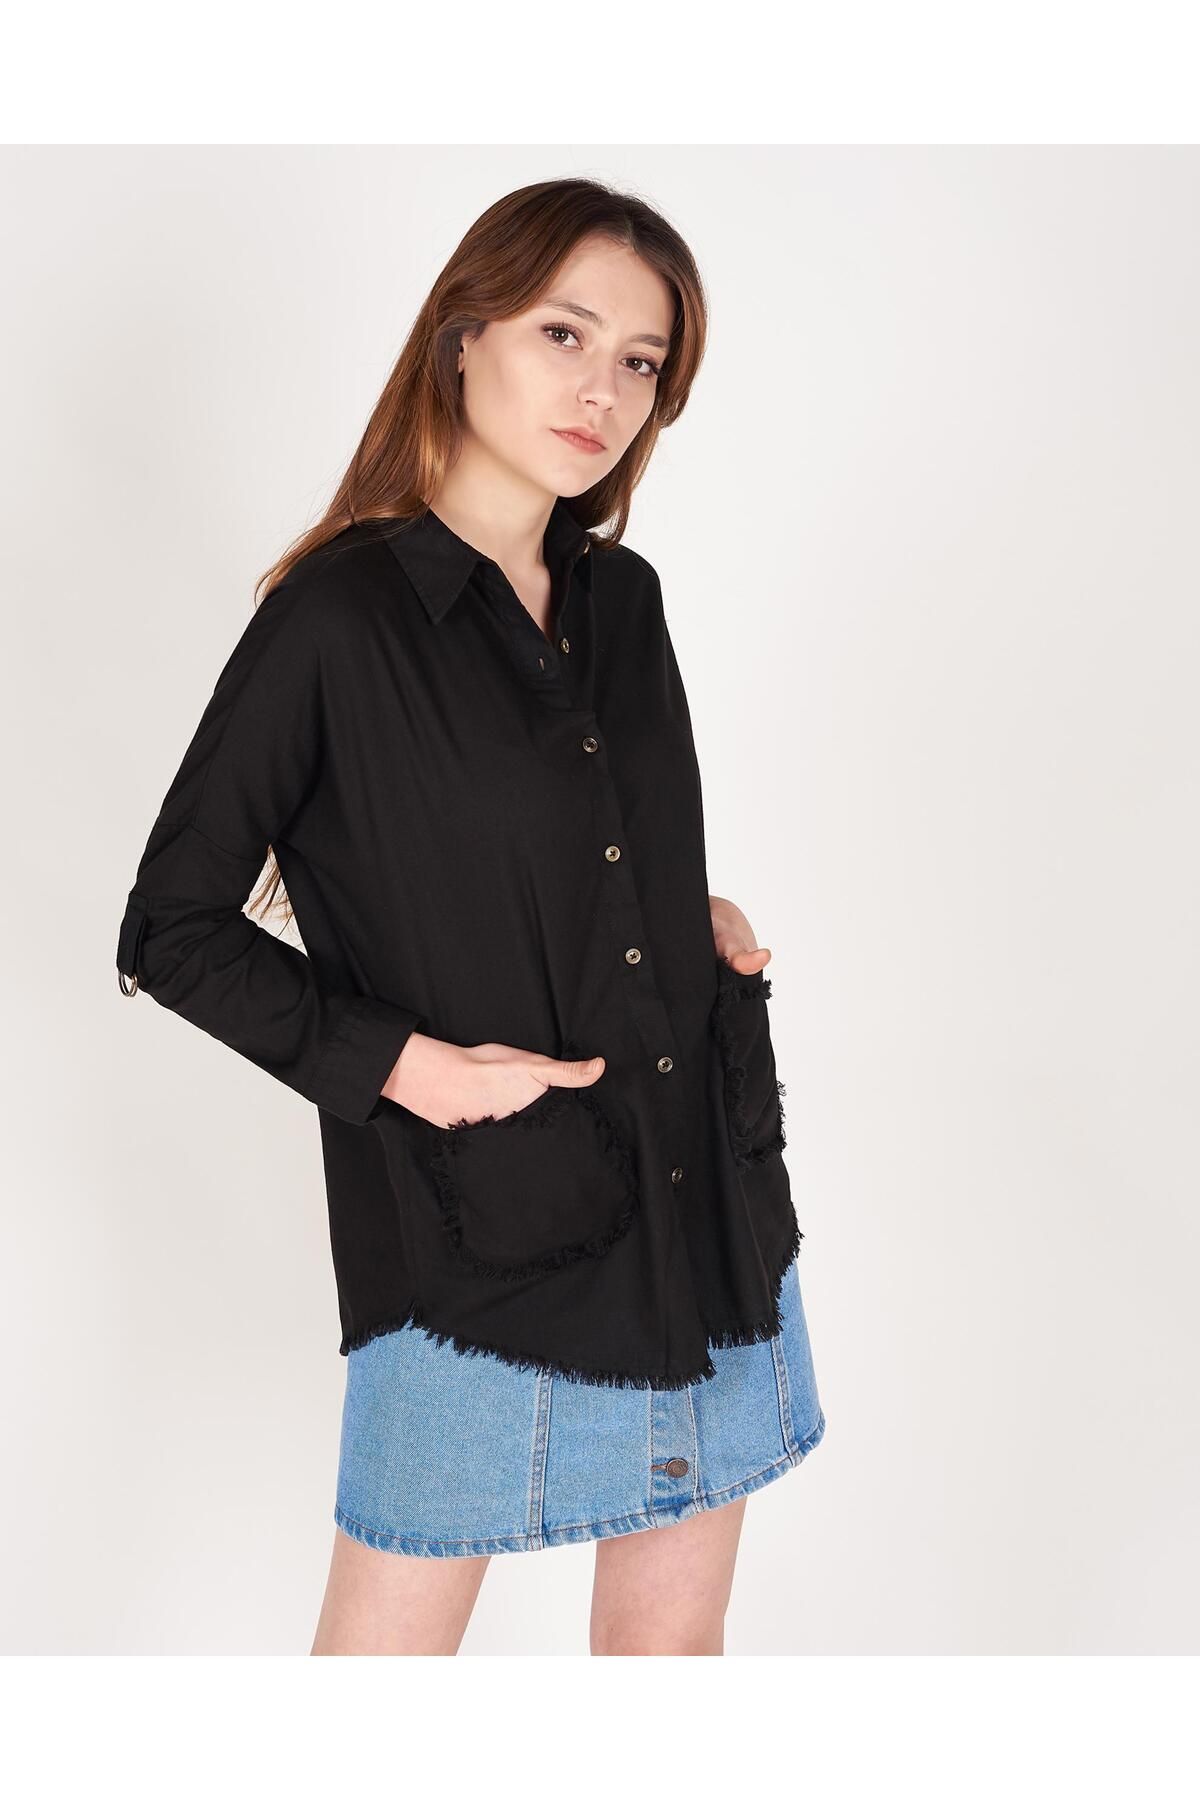 Addax Kadın Siyah Cep Detaylı Gömlek G19-9884 - V3 ADX-0000016530